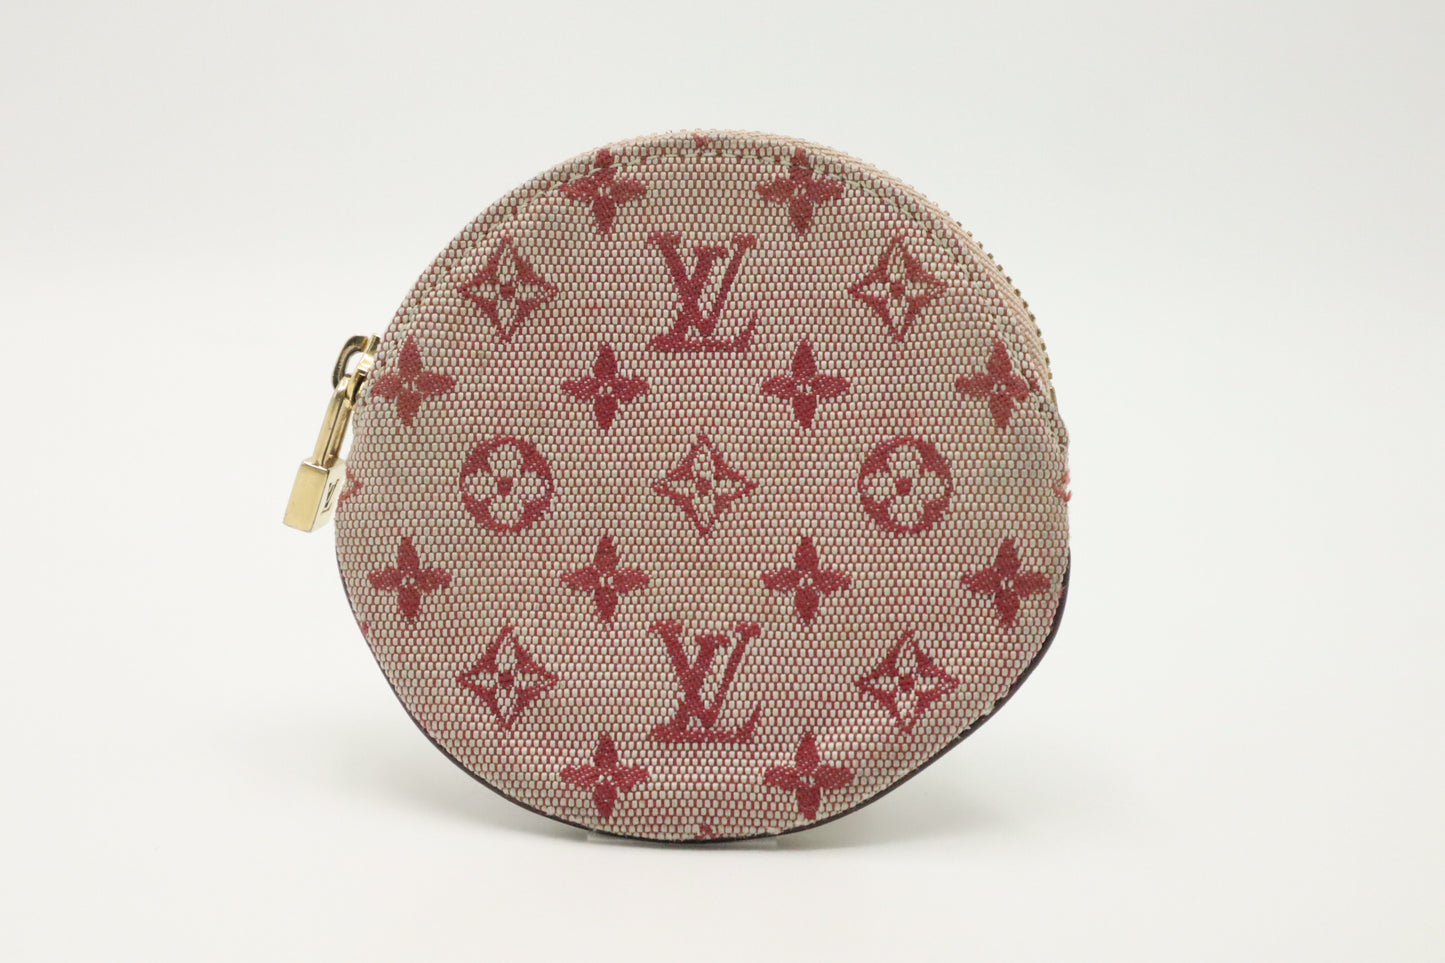 Louis Vuitton Round Coin Case in Sepia Denim Canvas